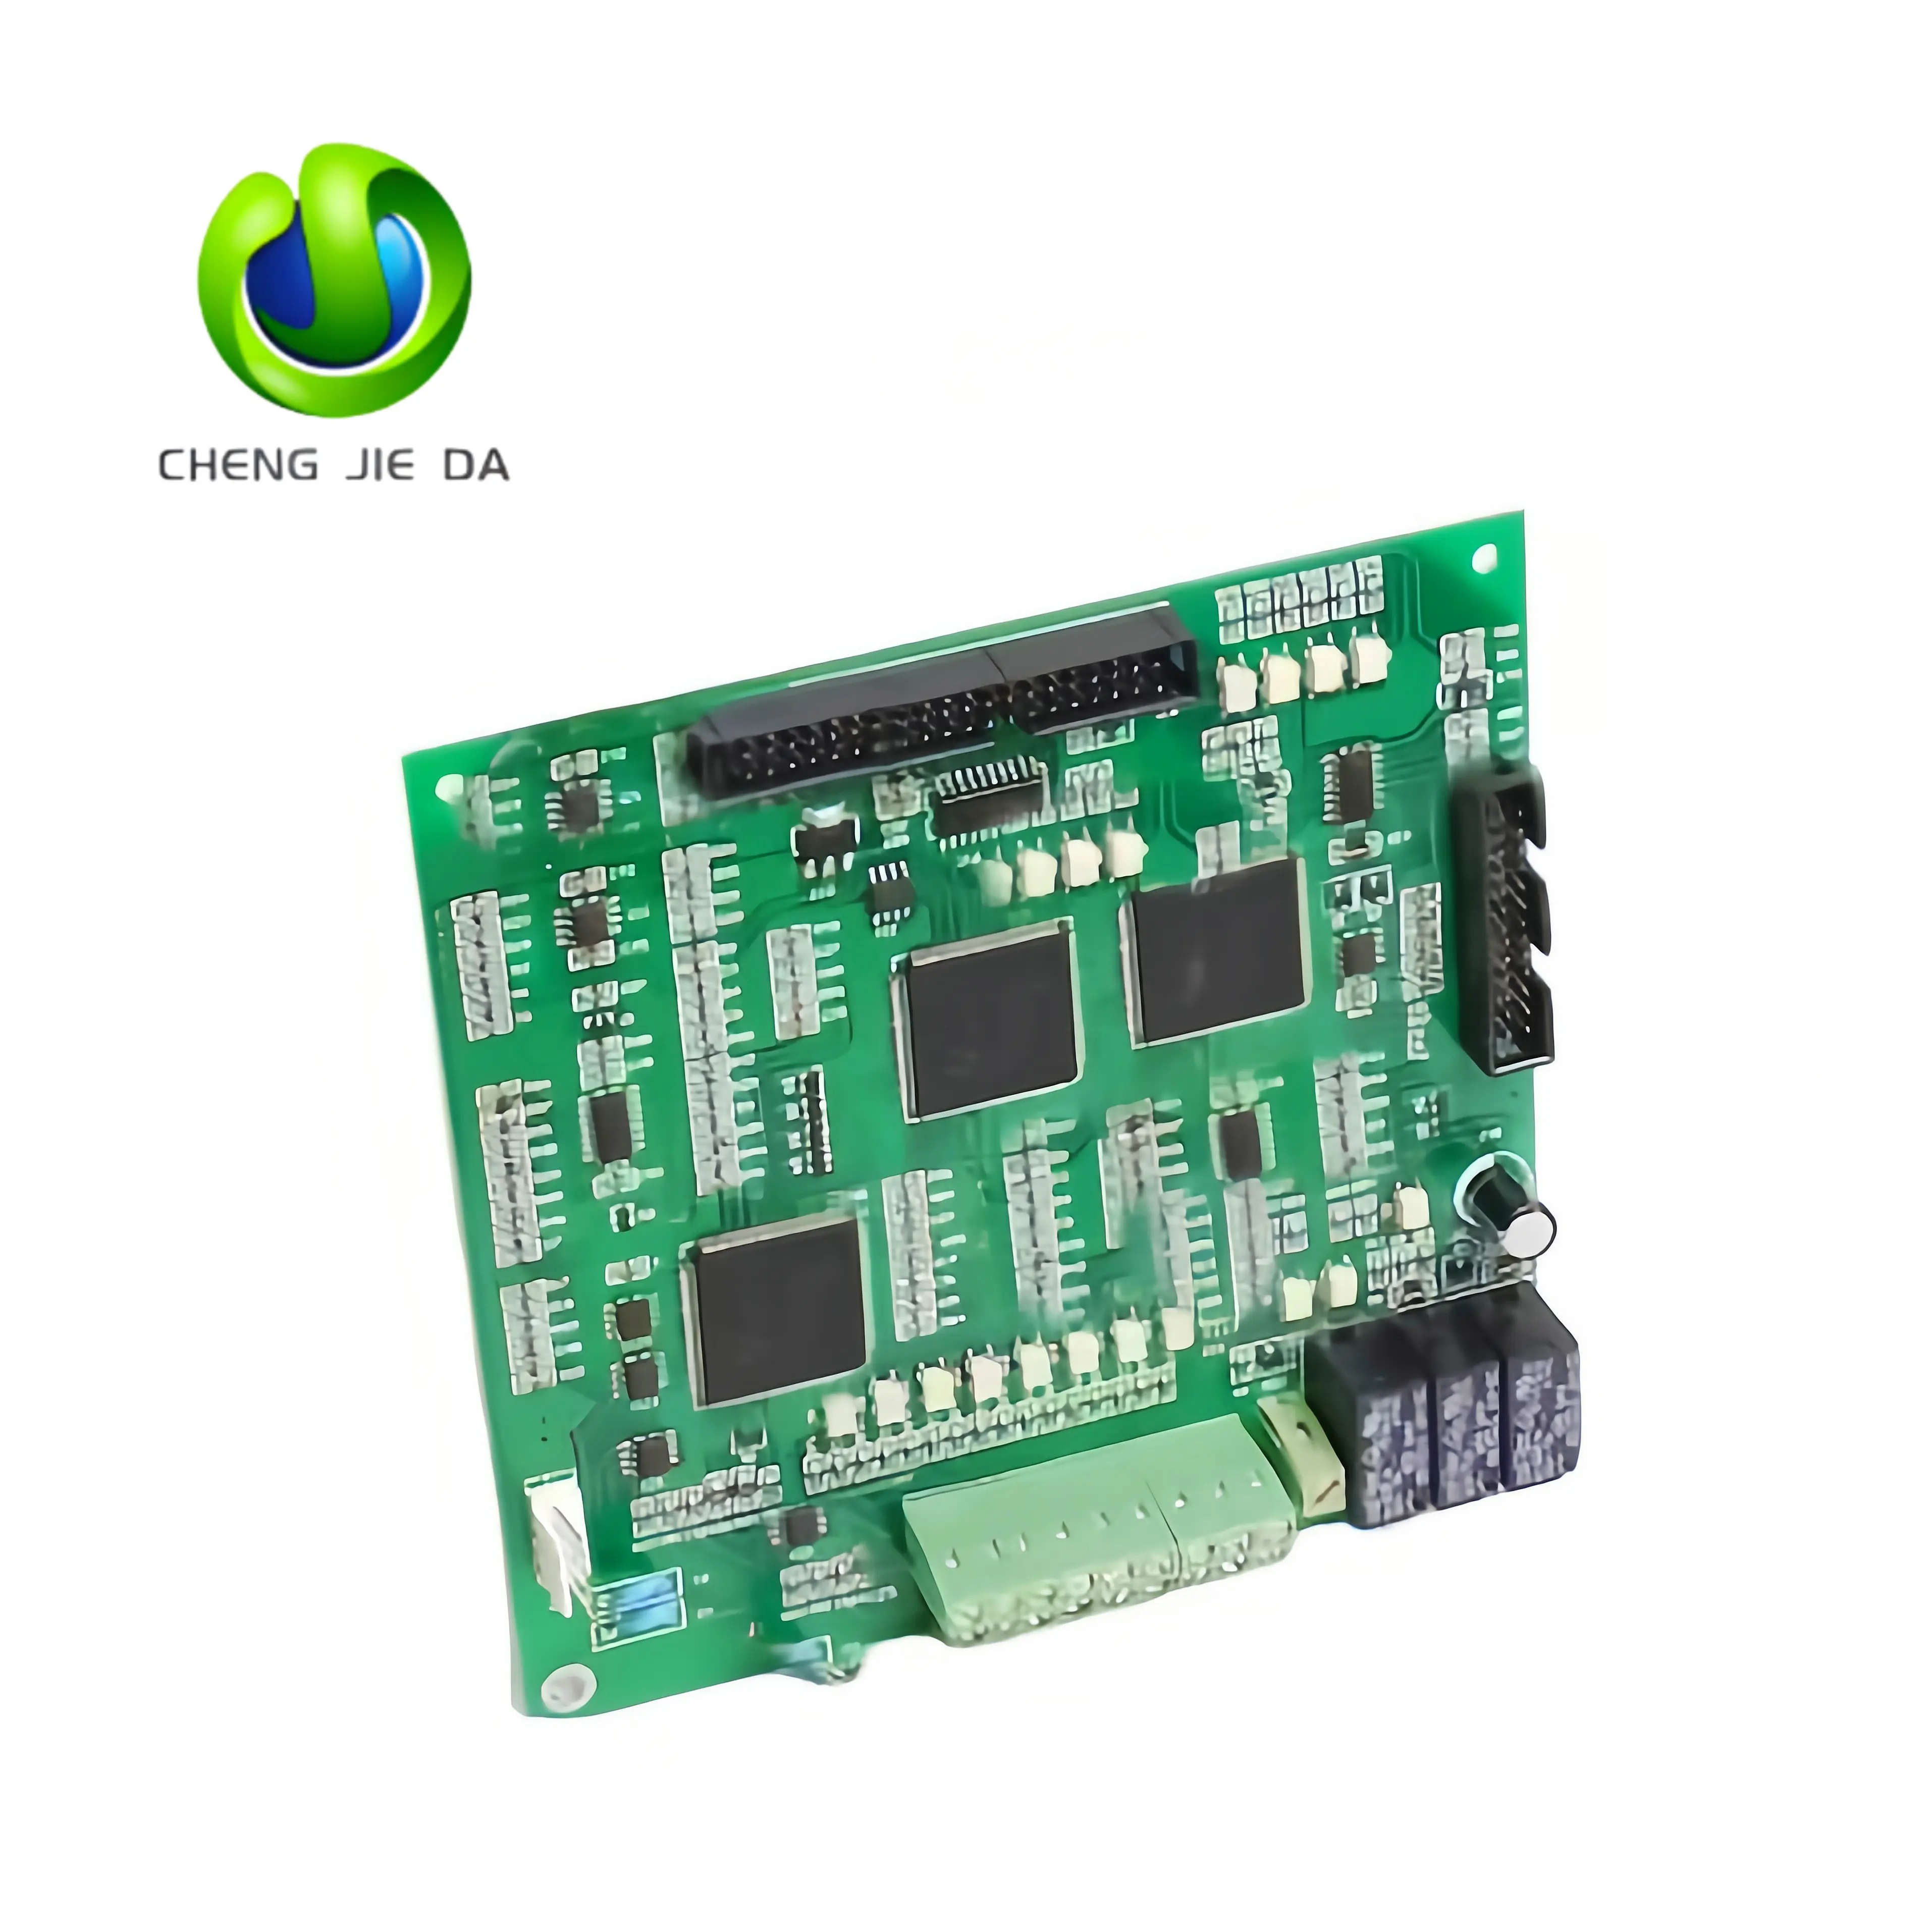 Shenzhen Électronique Circuits imprimés Oem Assemblage Fabricant Fournisseur Personnalisé Autre Pcb & Pcba Board Control